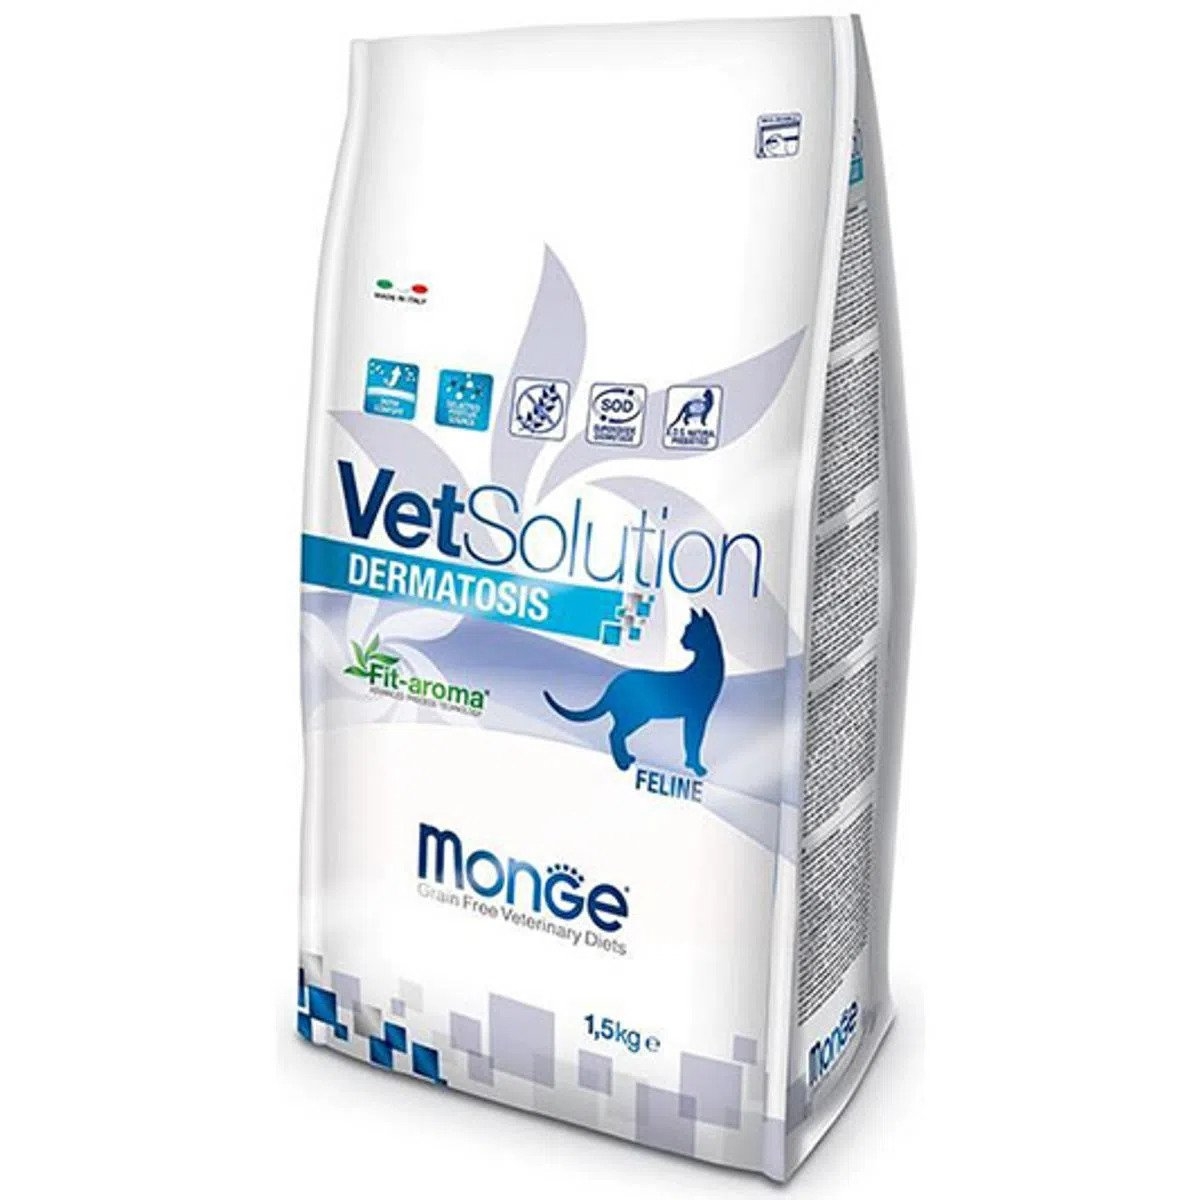 Monge Vetsolution Dermatosis Feline, 1.5 kg MONGE